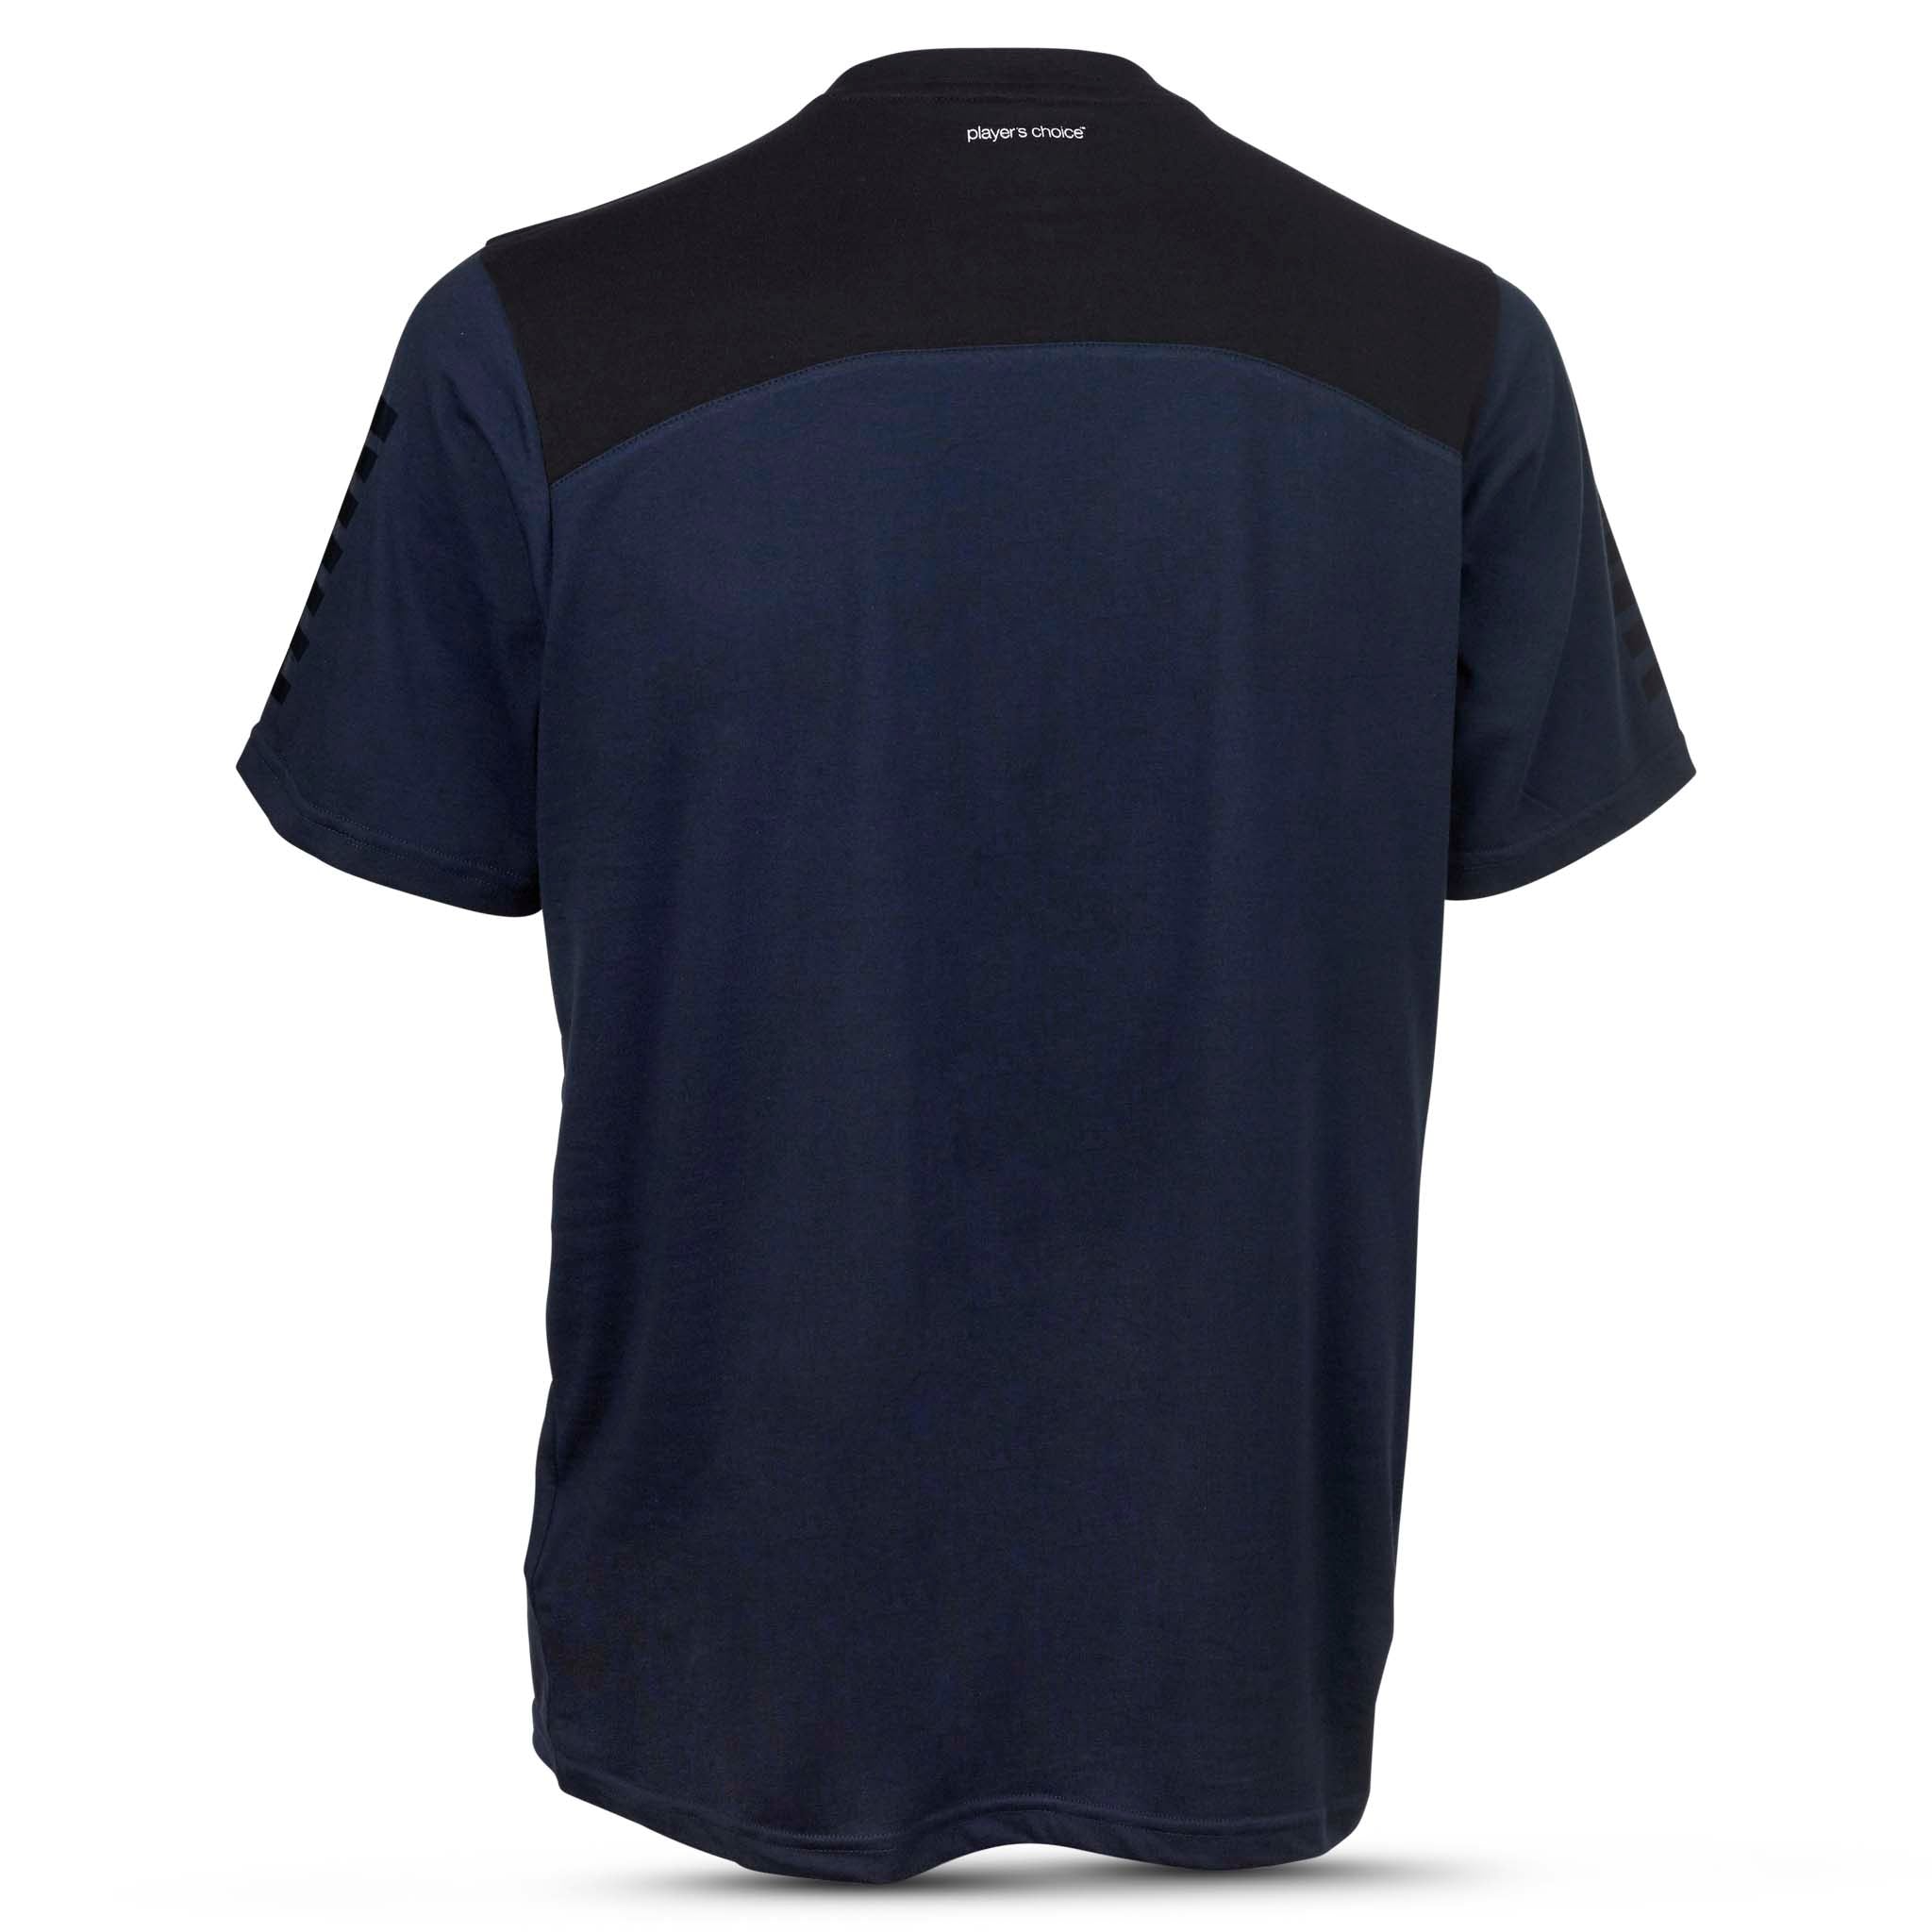 Oxford T-shirt - Barn #färg_navy/svart